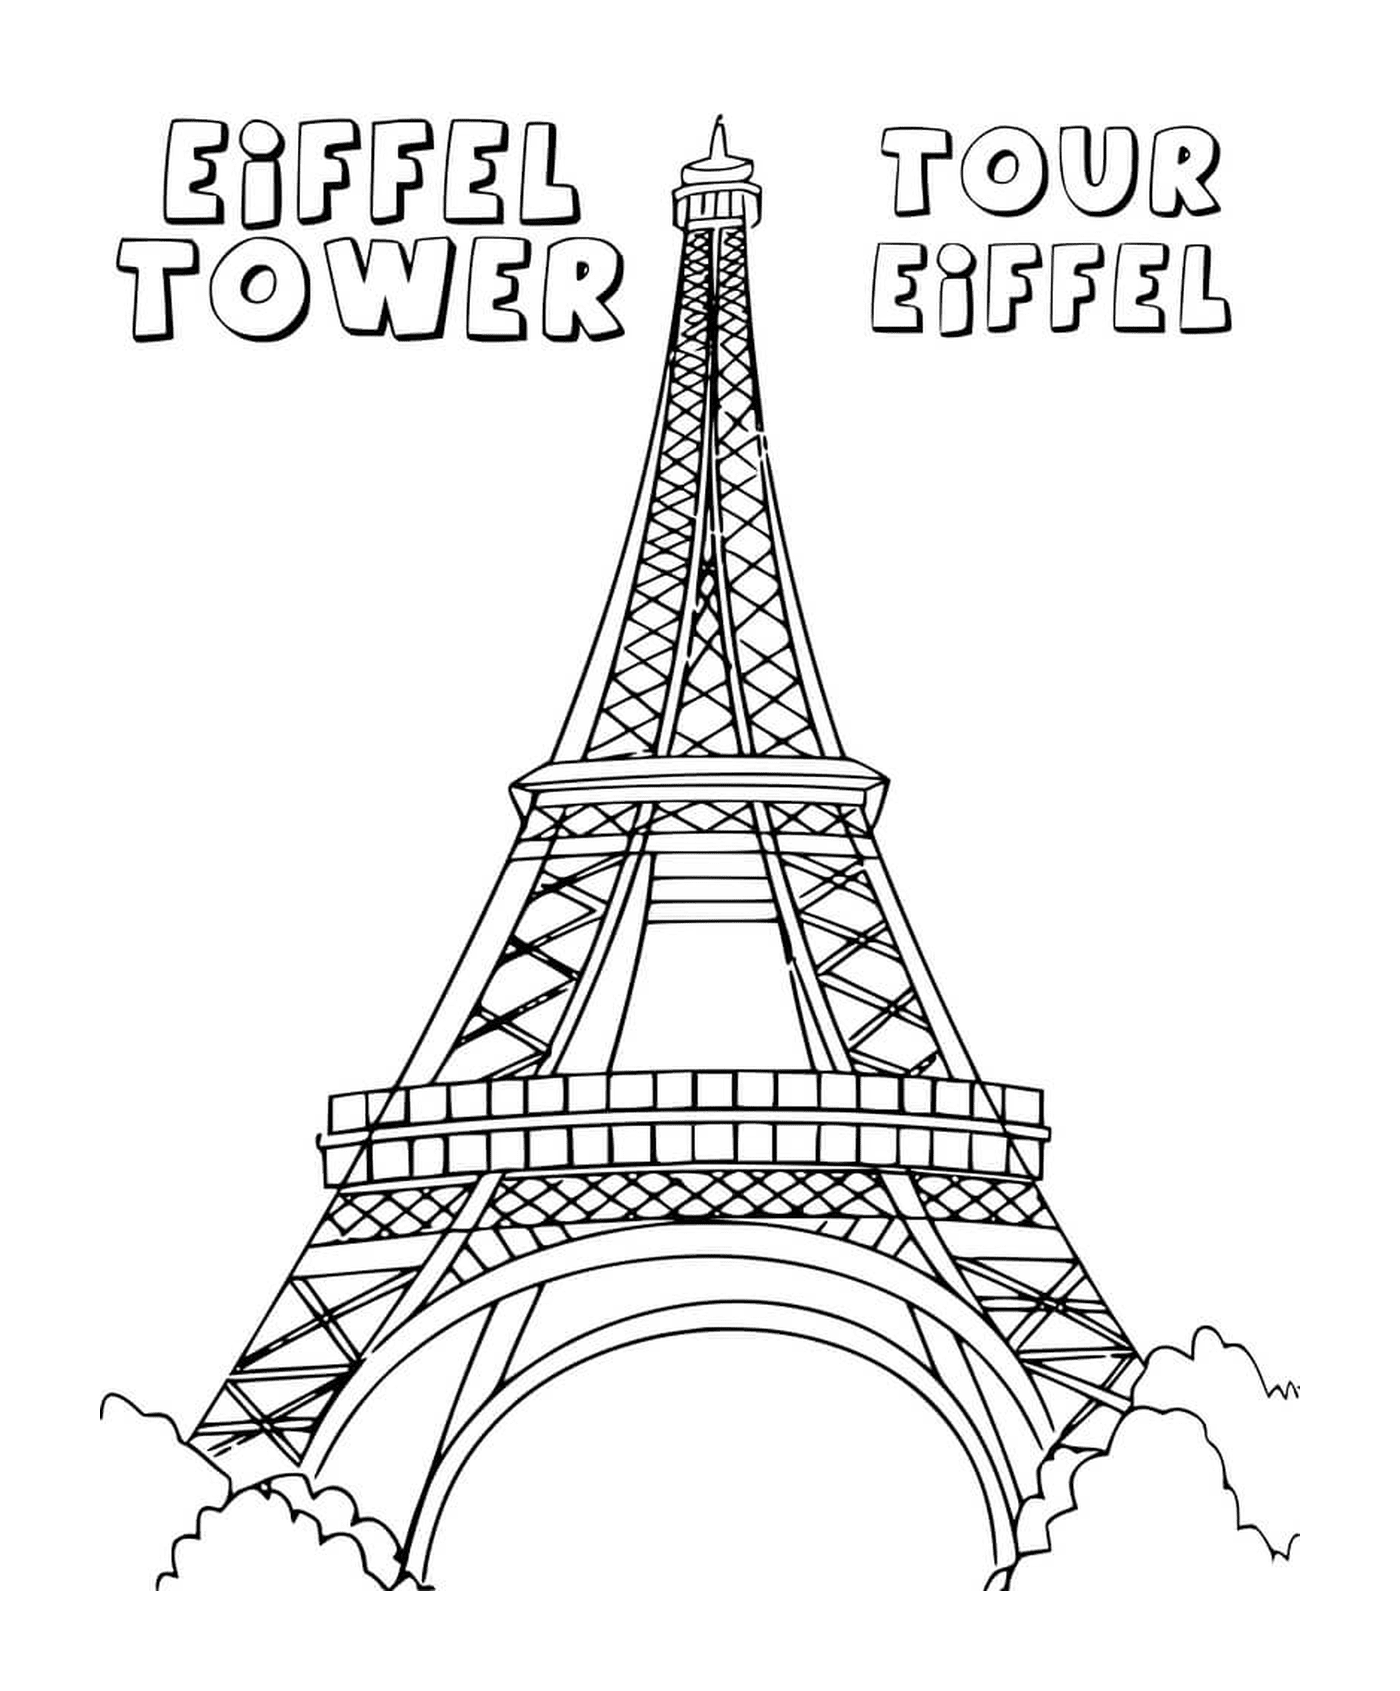   Tour Eiffel 